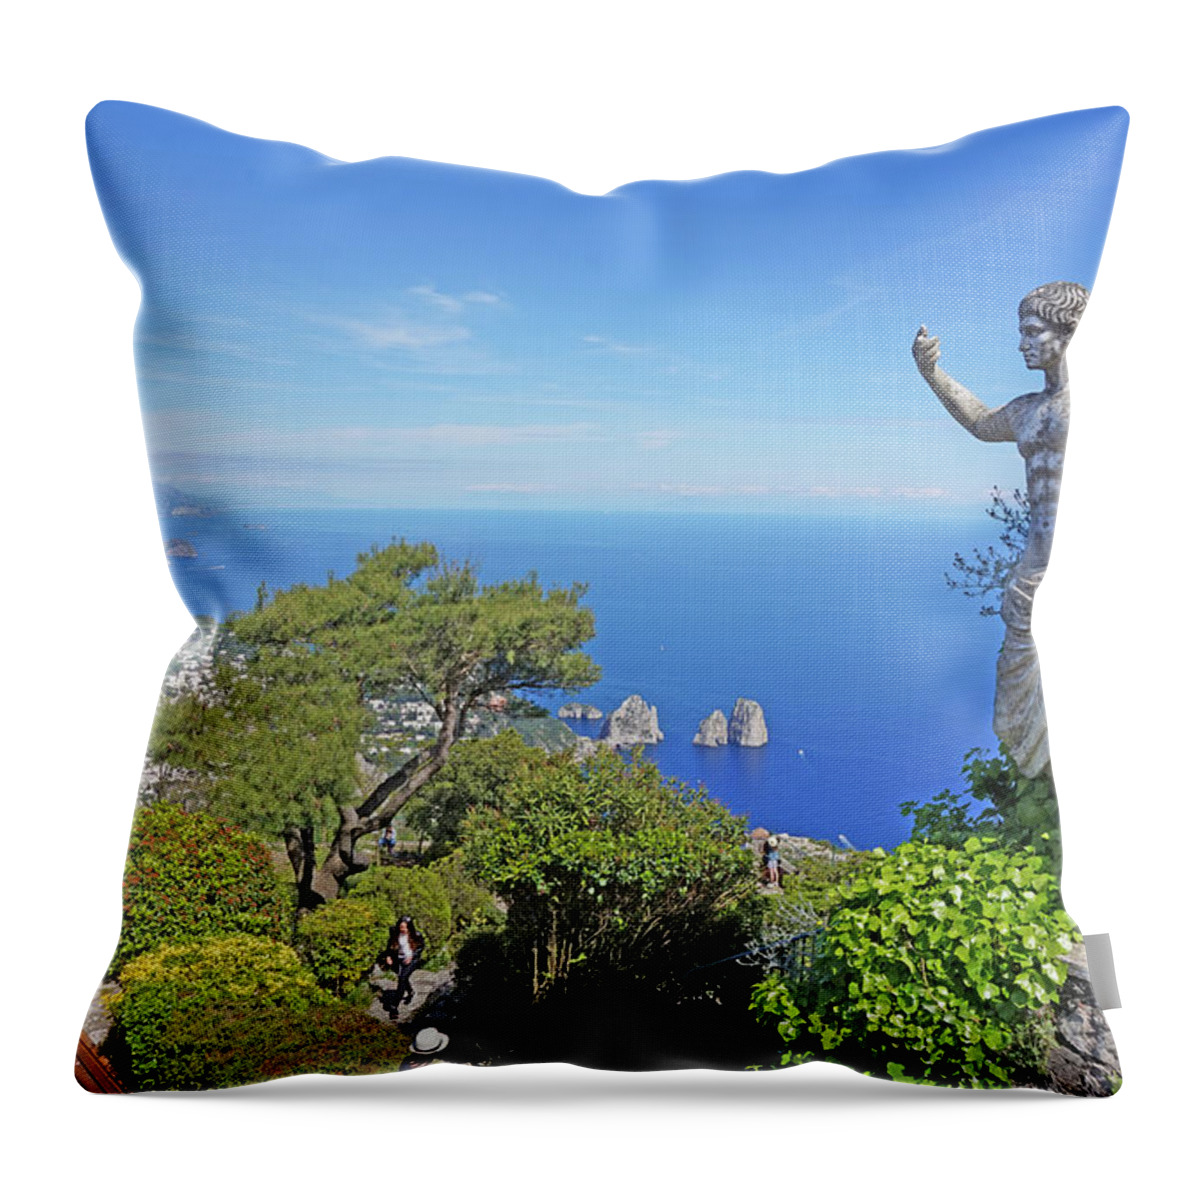 Monte Solaro Throw Pillow featuring the photograph Anacapri, Italy by Yvonne Jasinski